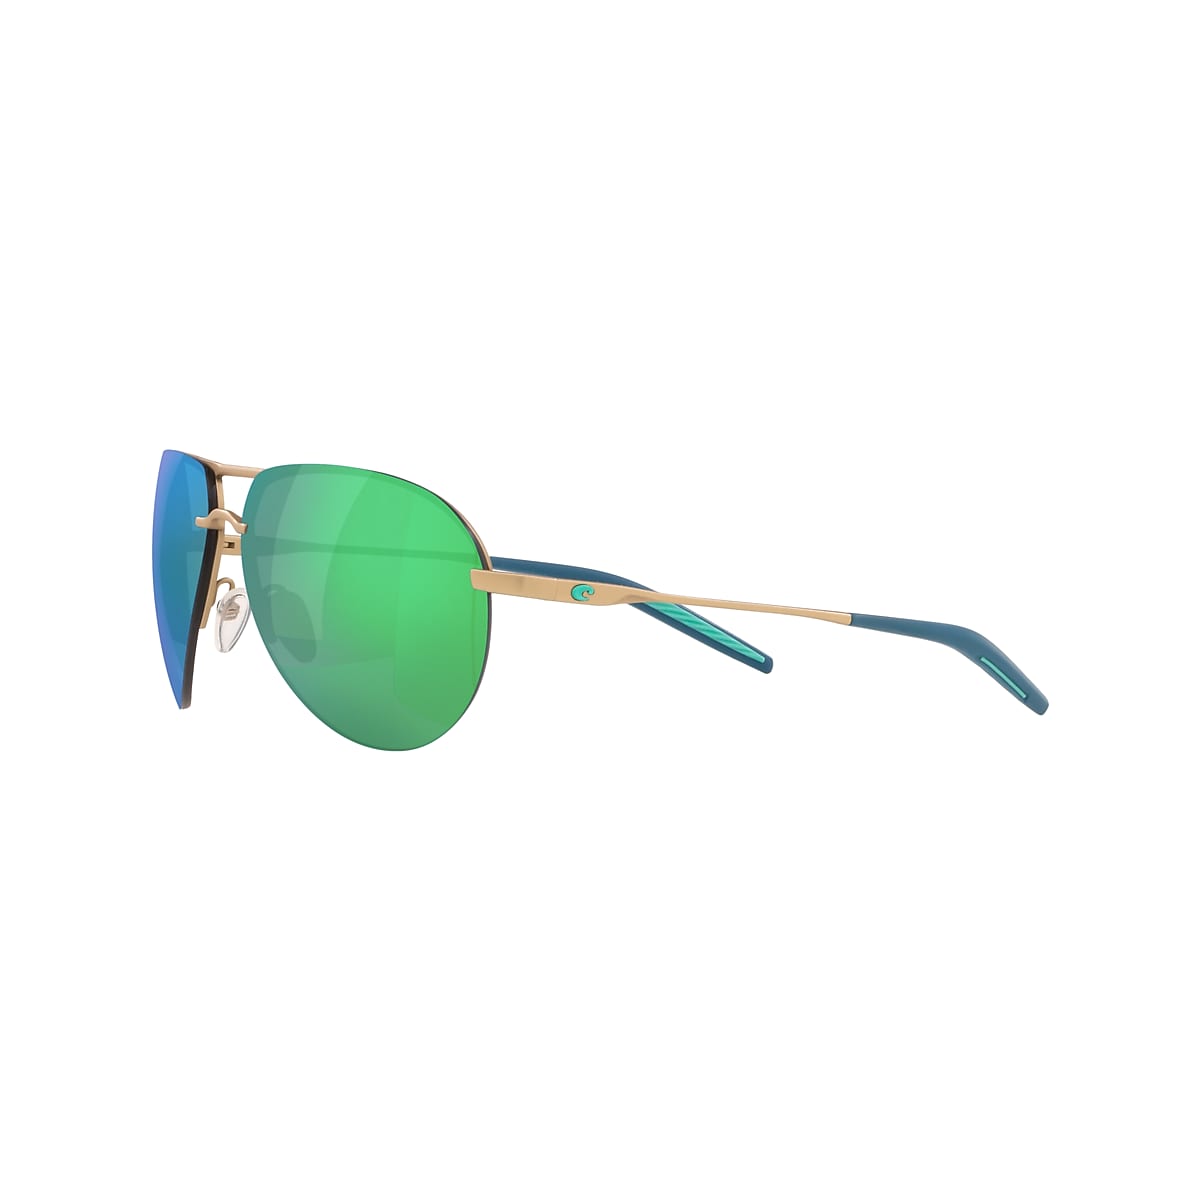 Helo Polarized Sunglasses in Green Mirror | Costa Del Mar®